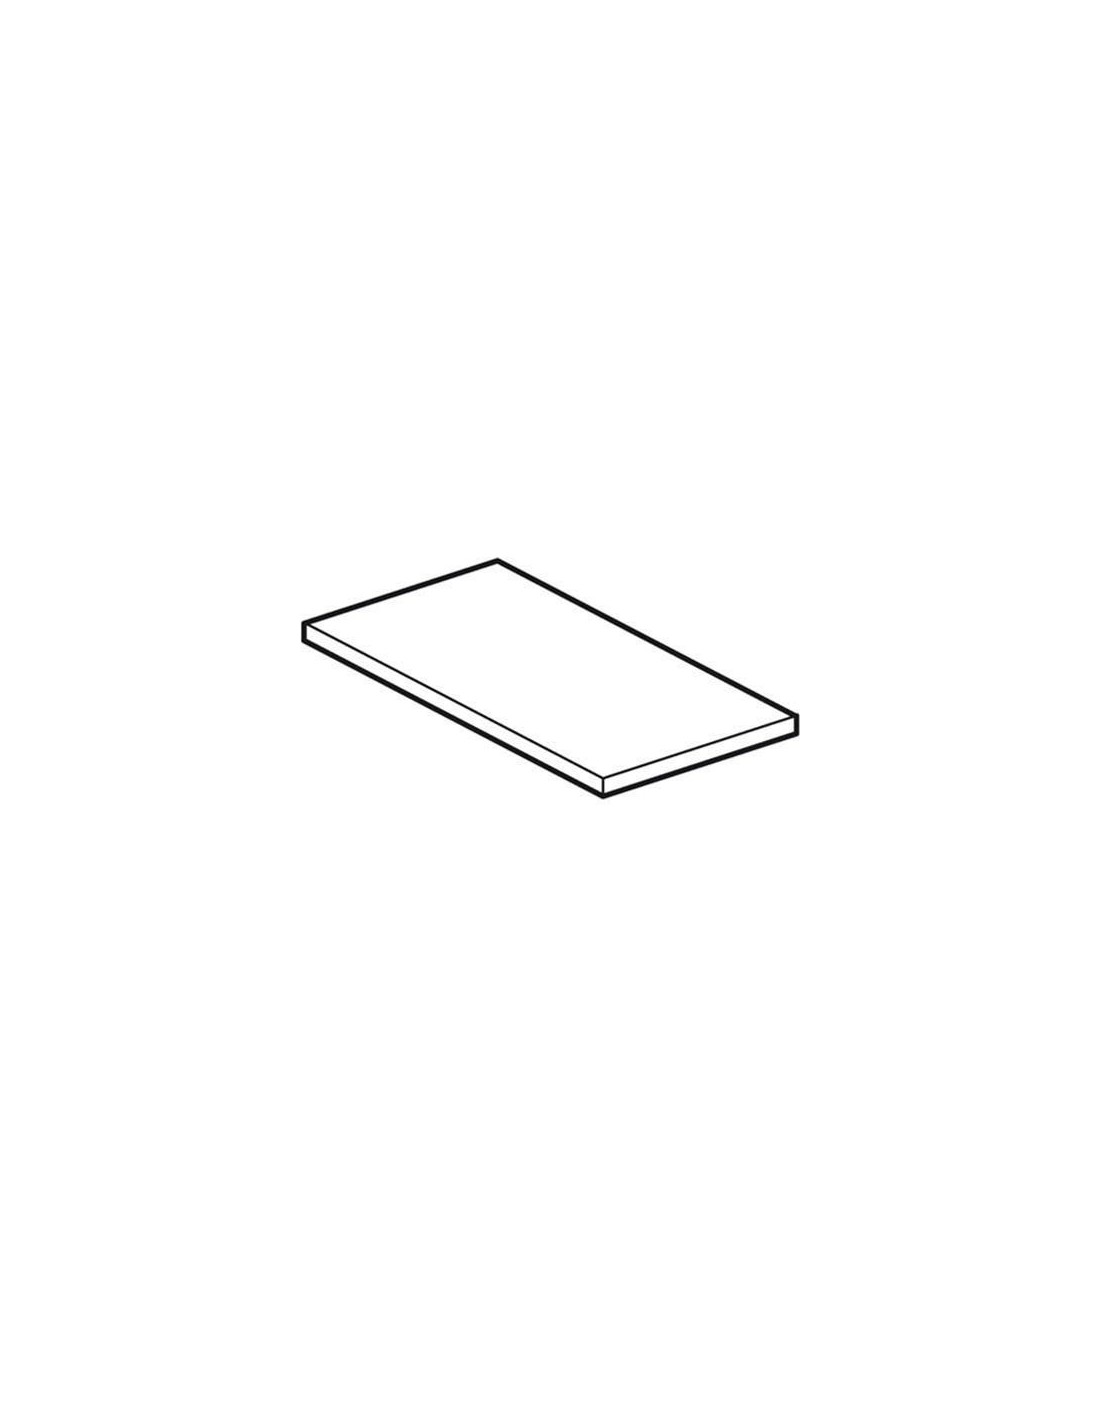 Tablero de corte plástico - Dimensiones cm 39 x 75 x 2,5